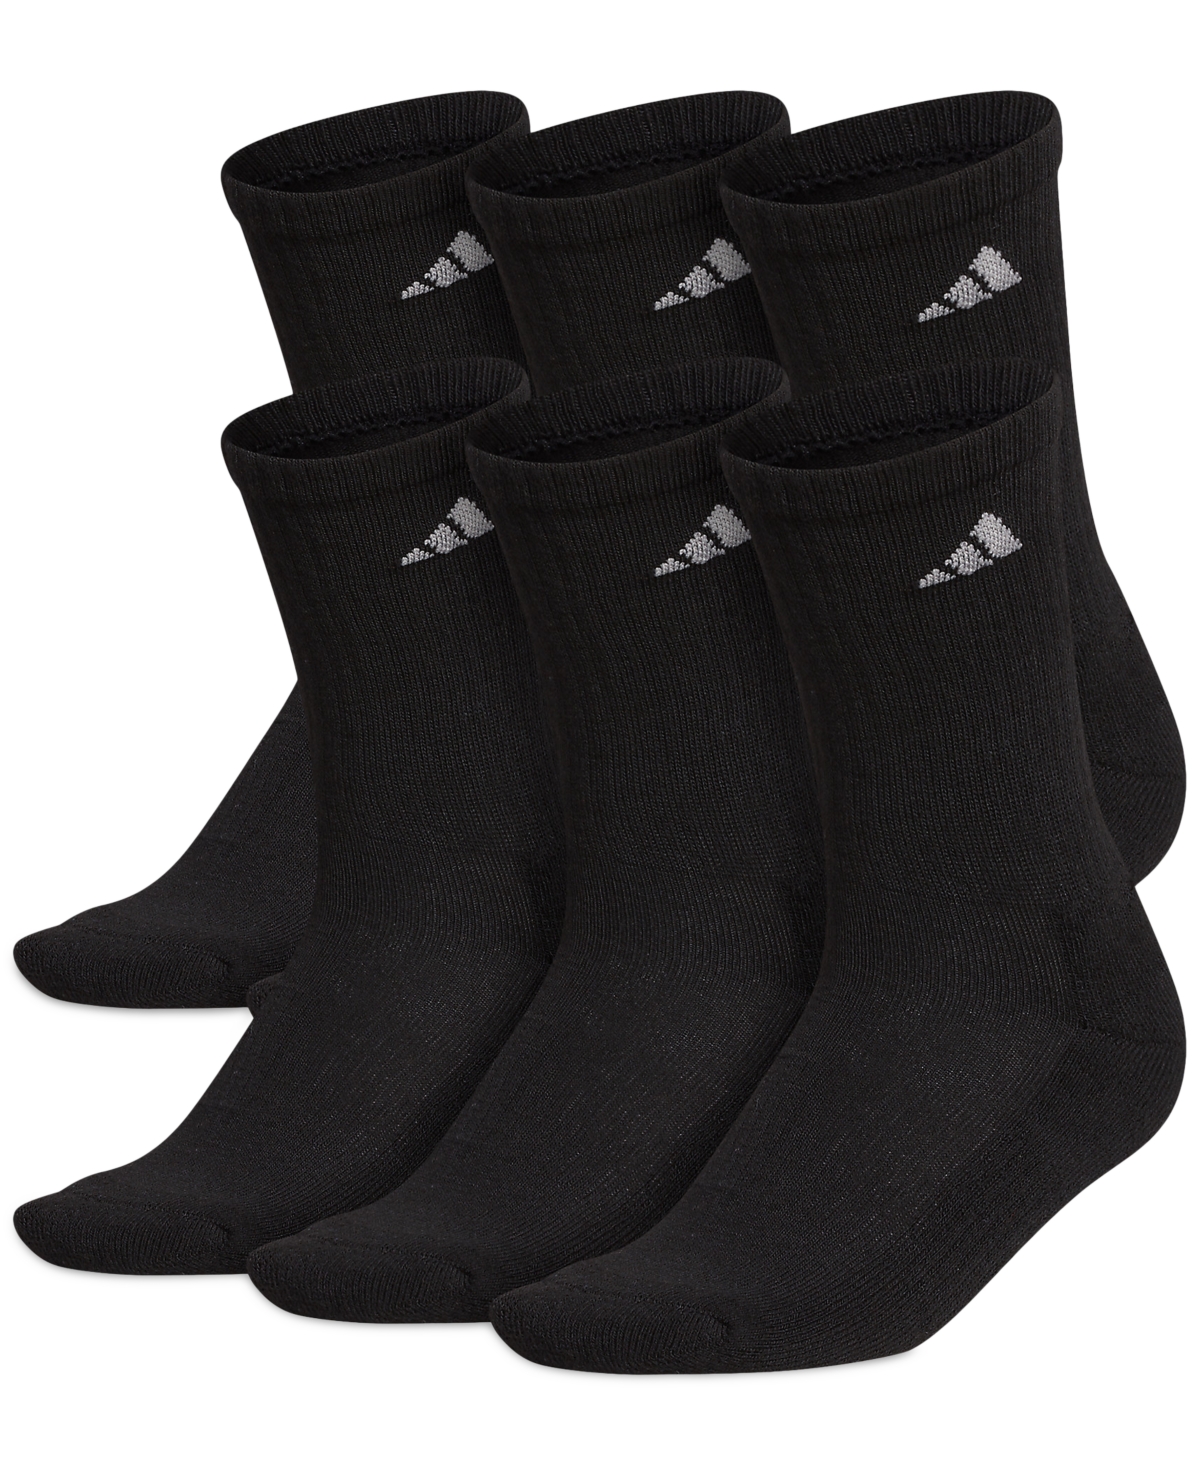 Adidas Originals Women's 6-pk. Athletic Cushioned Crew Socks In Black,aluminum